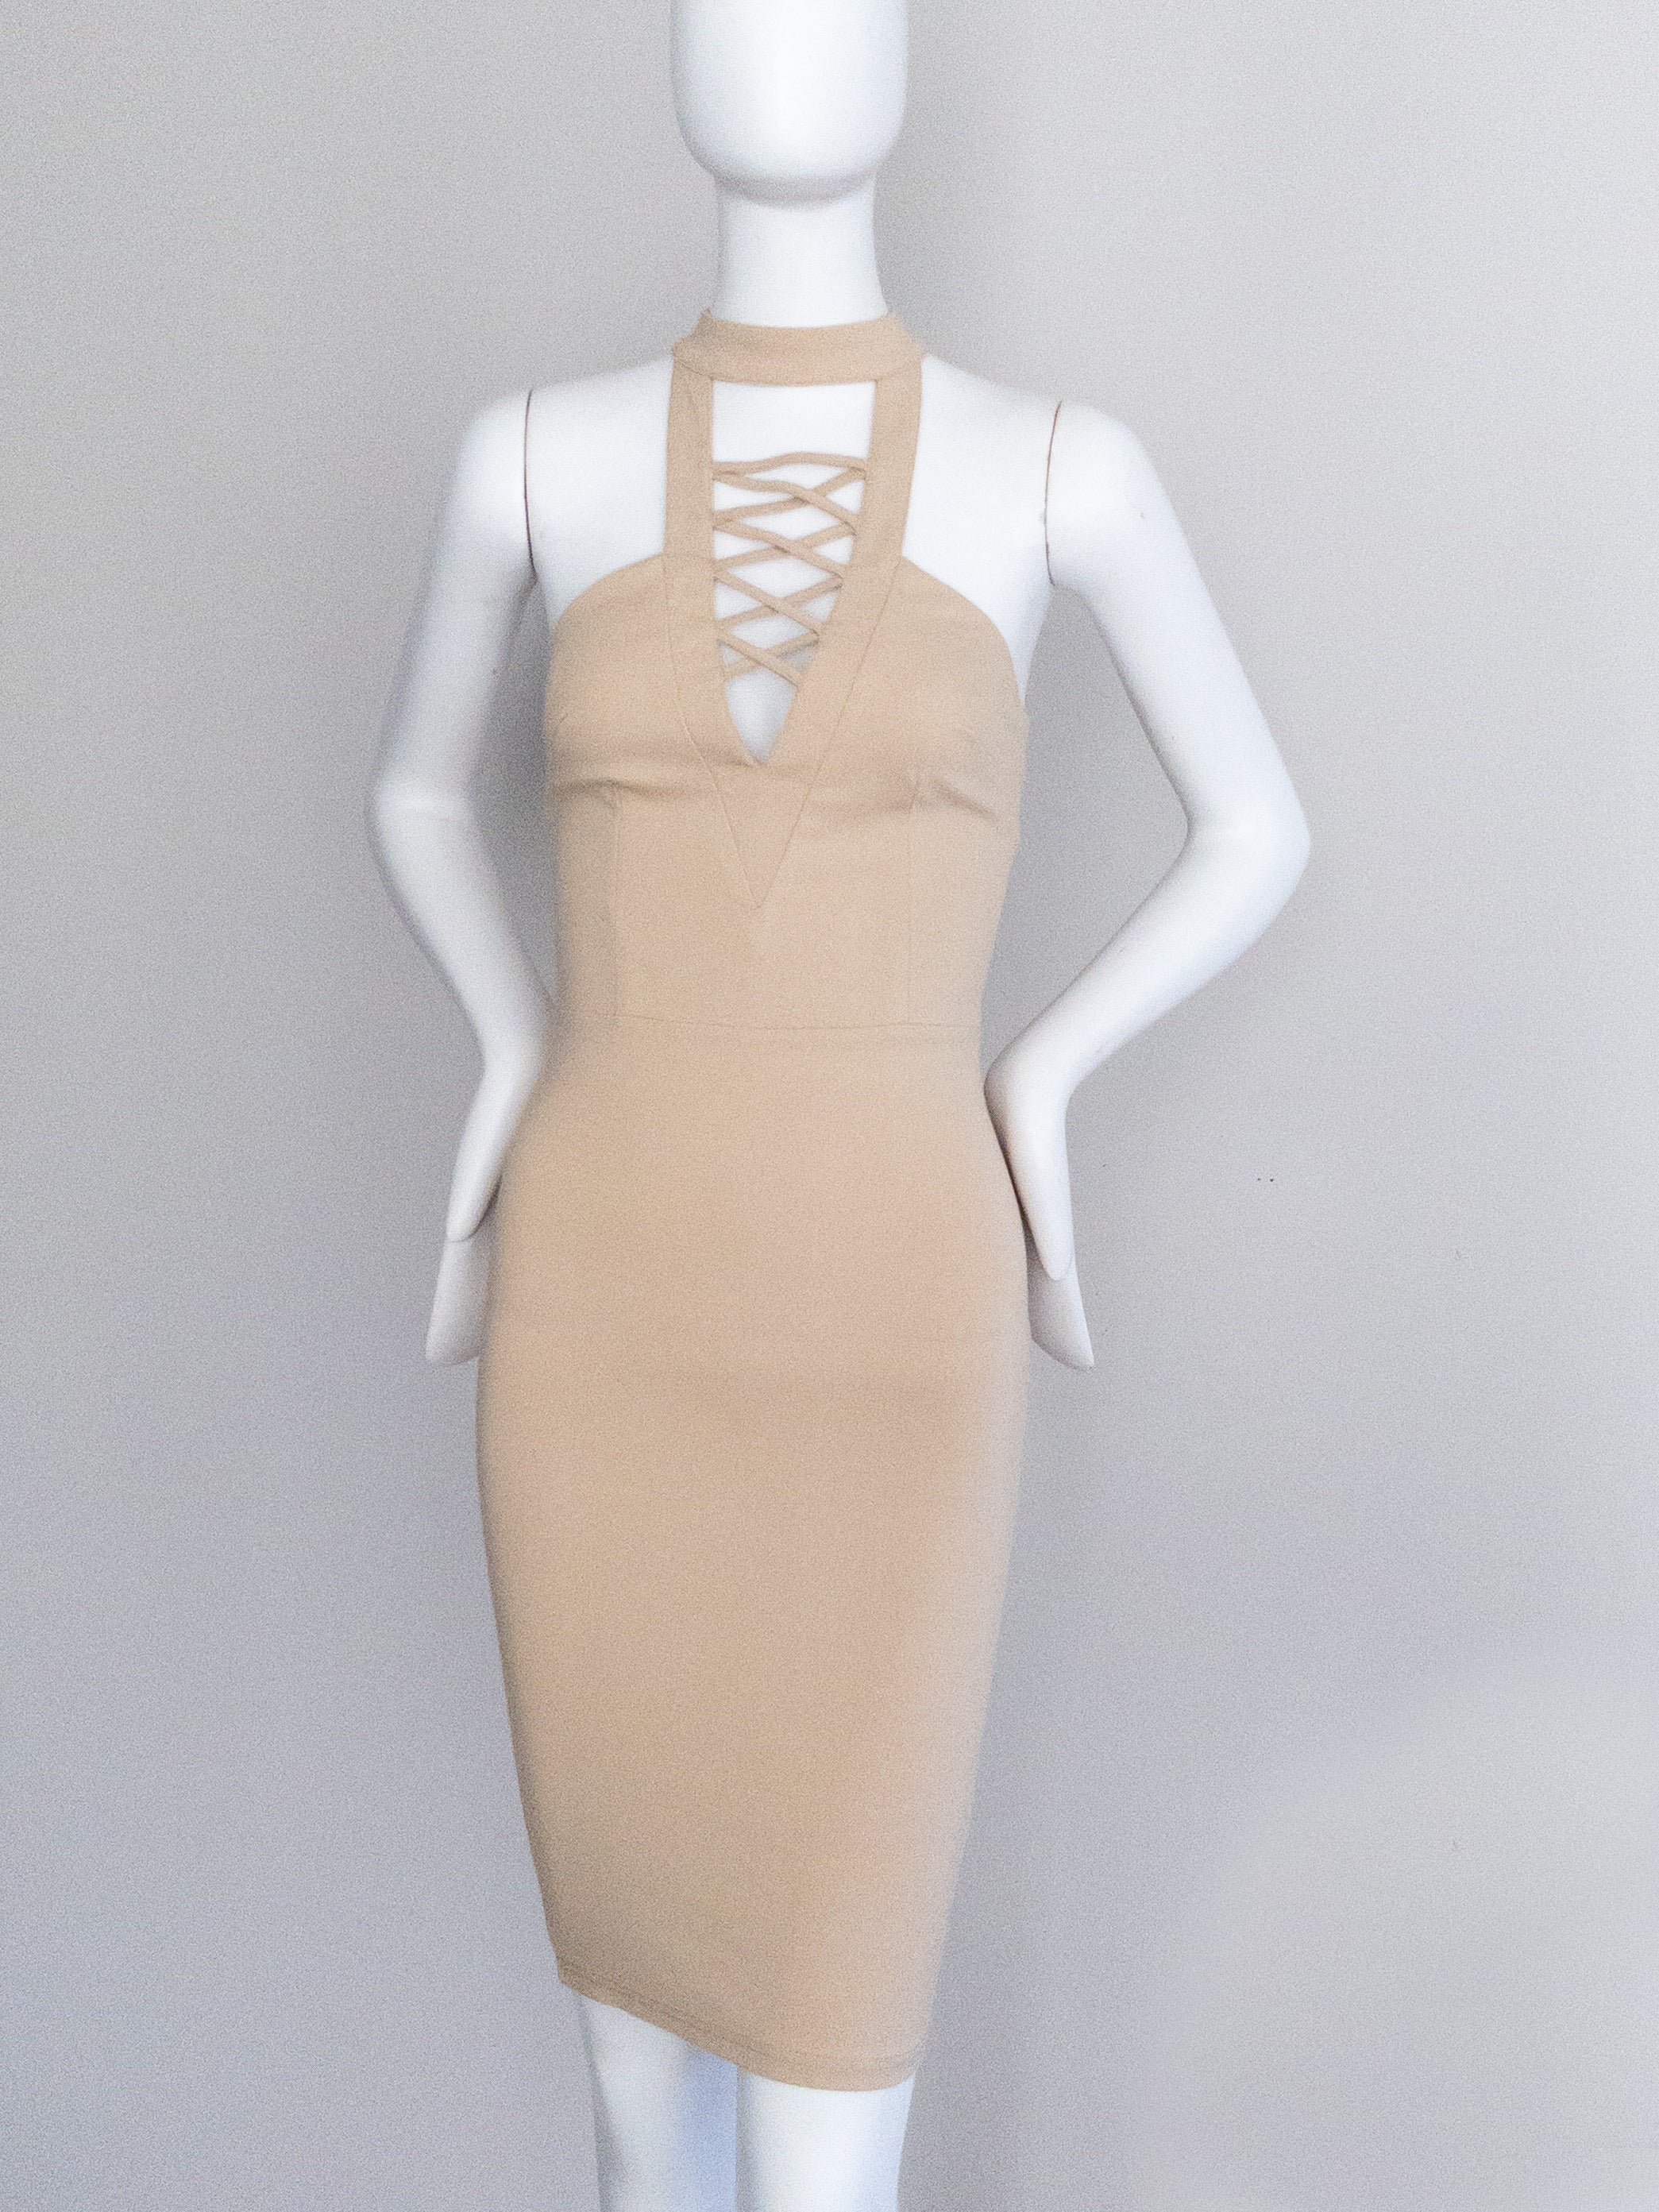 BNWT LEVORA Sexy Bodycon Halterneck Dress - Size 6